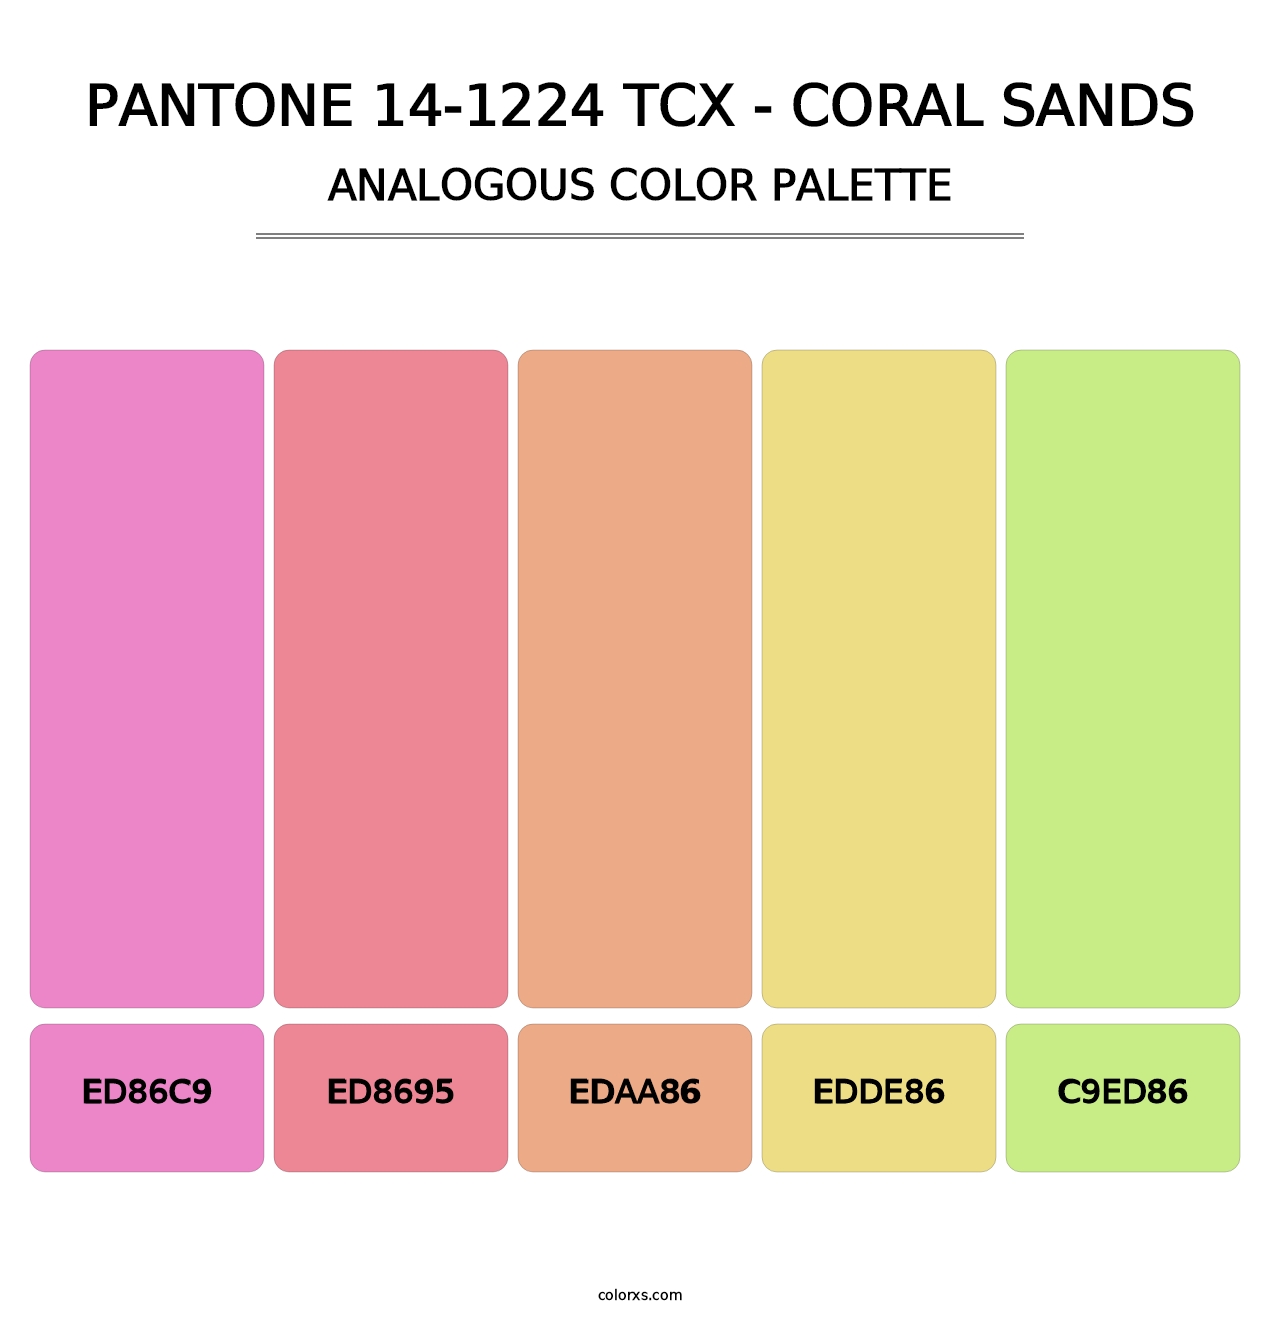 PANTONE 14-1224 TCX - Coral Sands - Analogous Color Palette